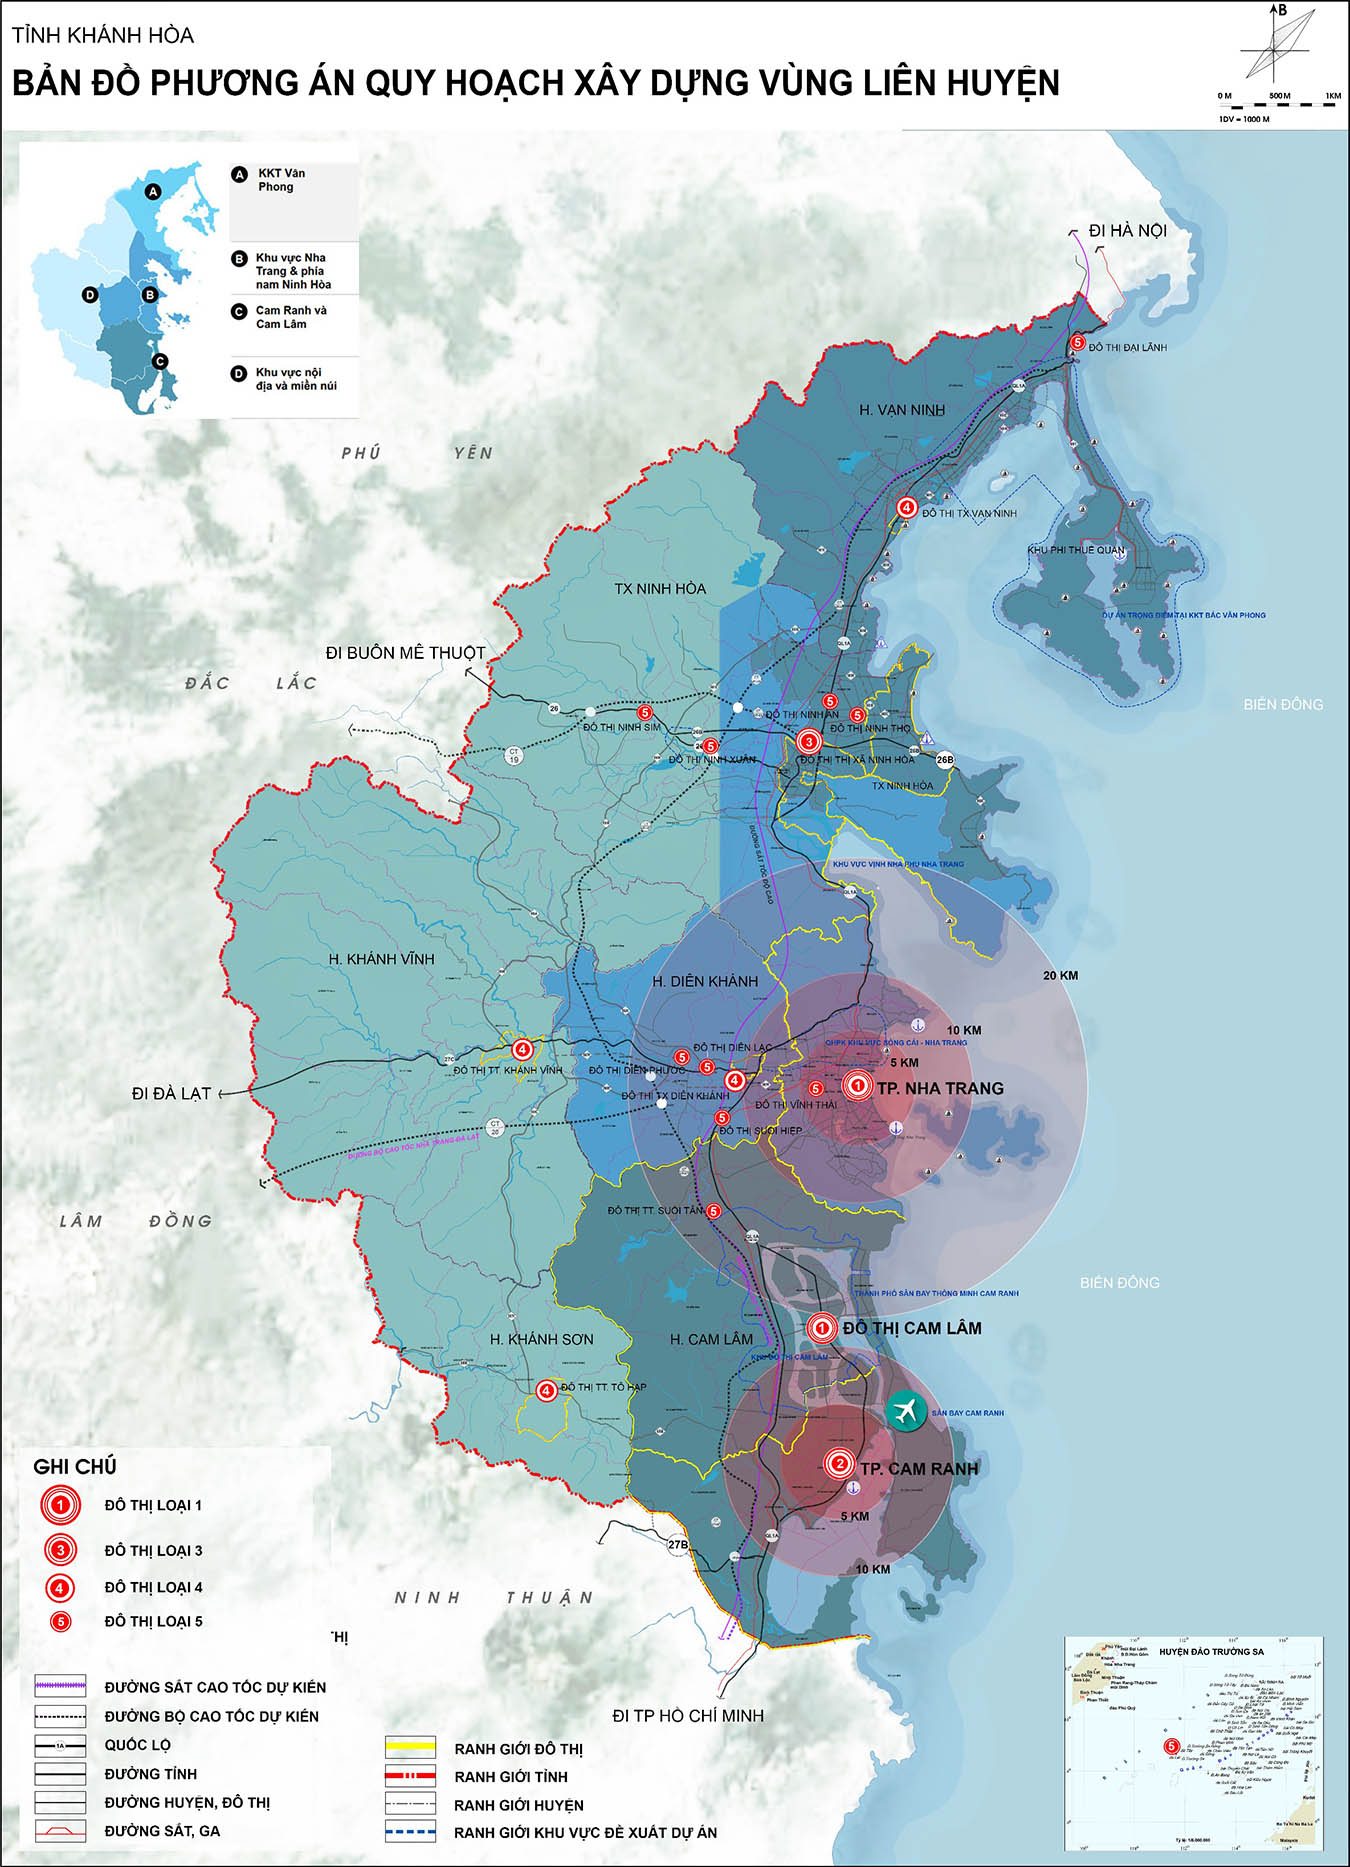 Bản đồ phương án quy hoahcj xây dựng vùng liên huyện tỉnh Khánh Hòa 2030